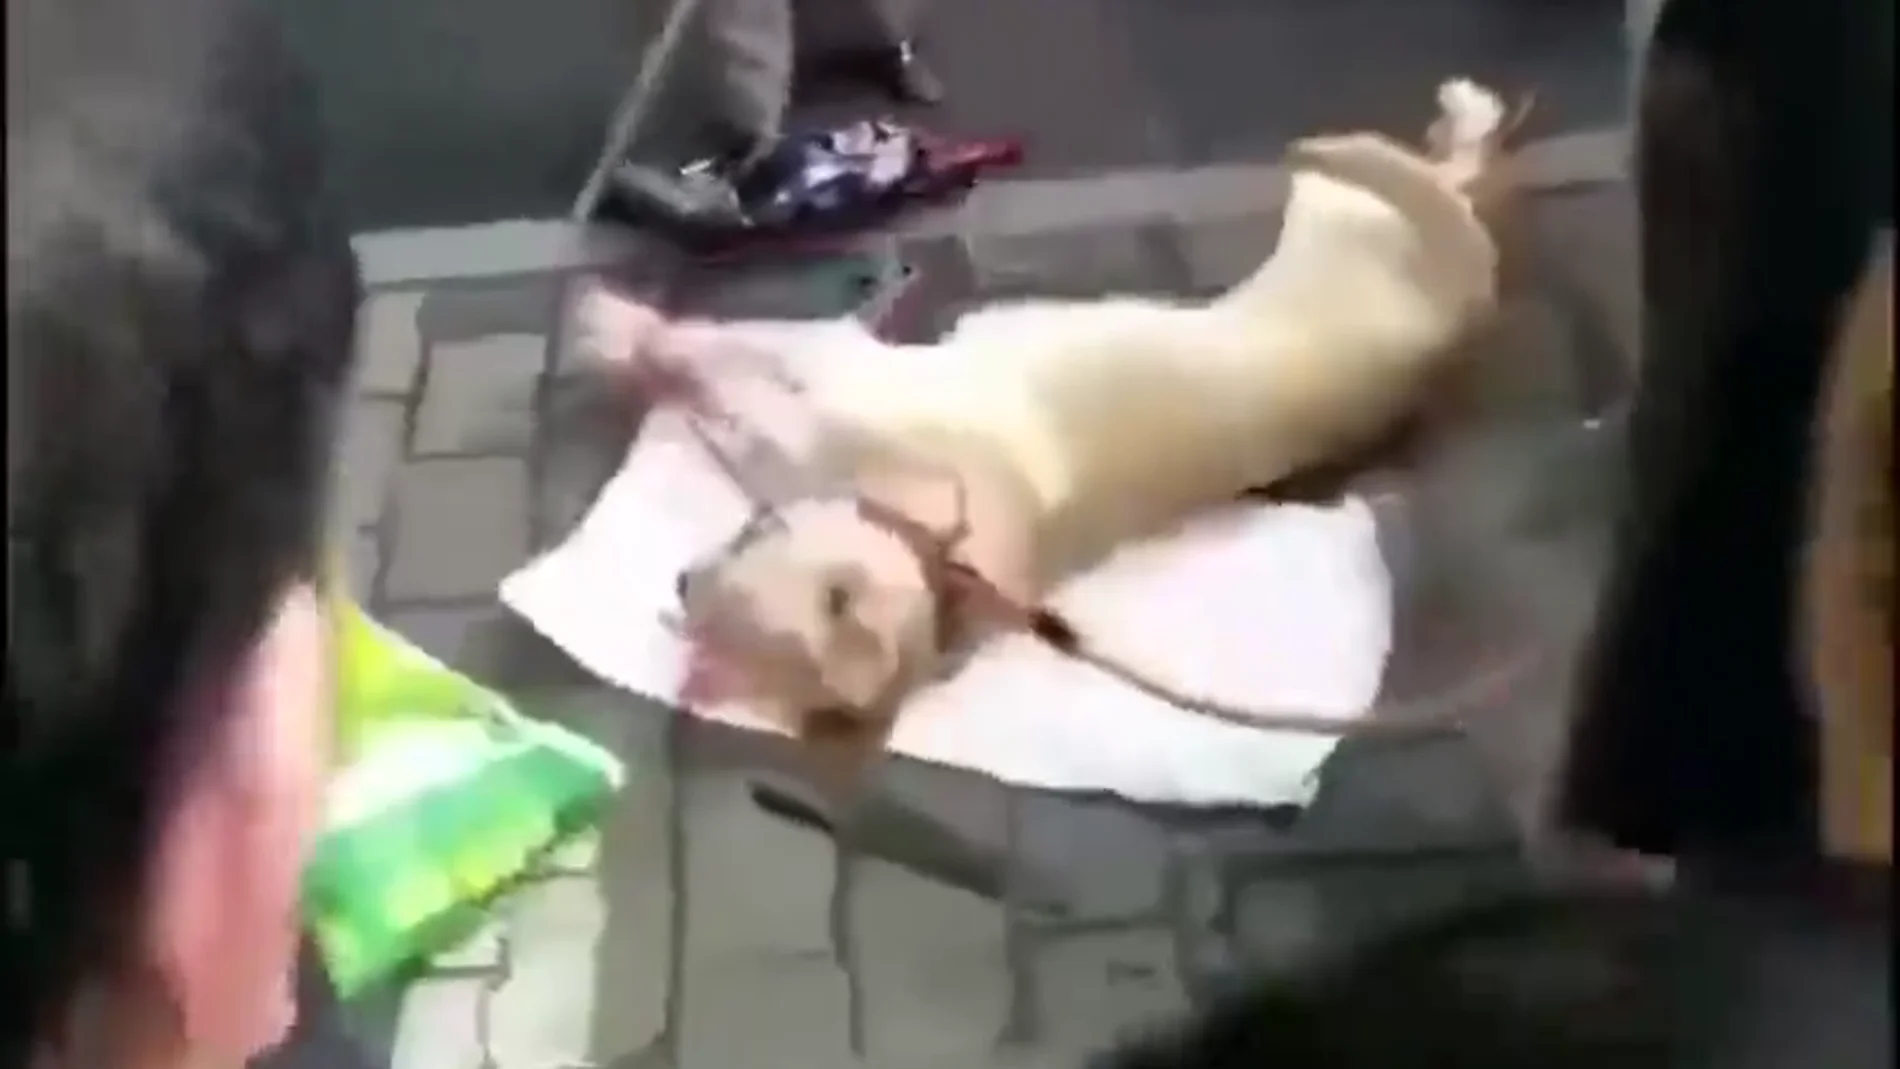 Impactante vídeo: una anciana apalea en plena calle a un perro vivo atado por las patas  